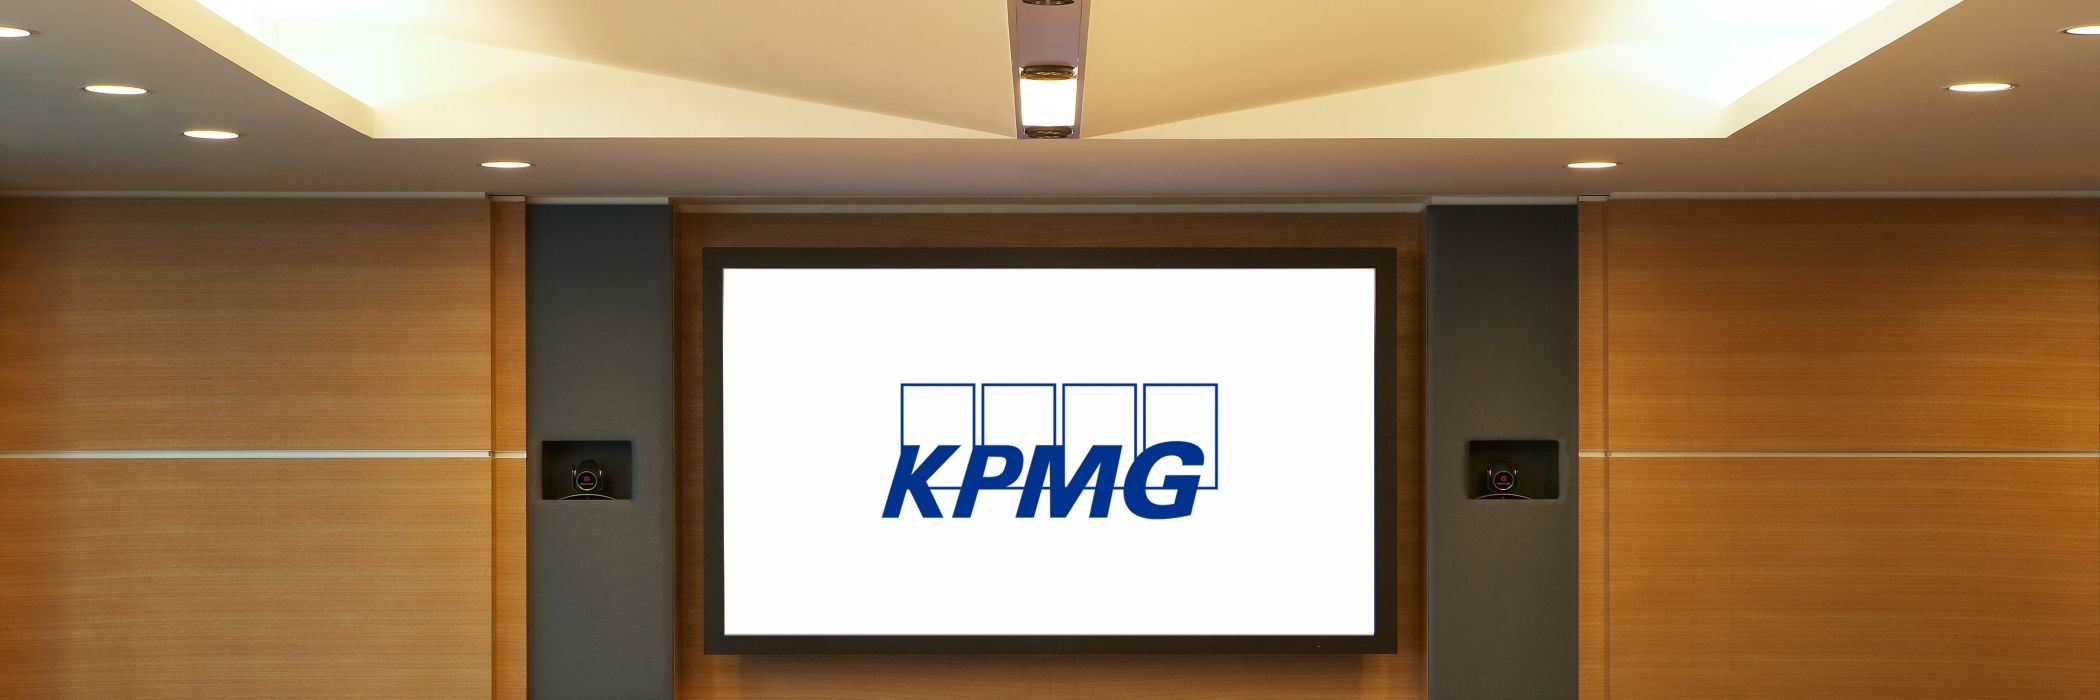 Escritório KPMG Rio de Janeiro